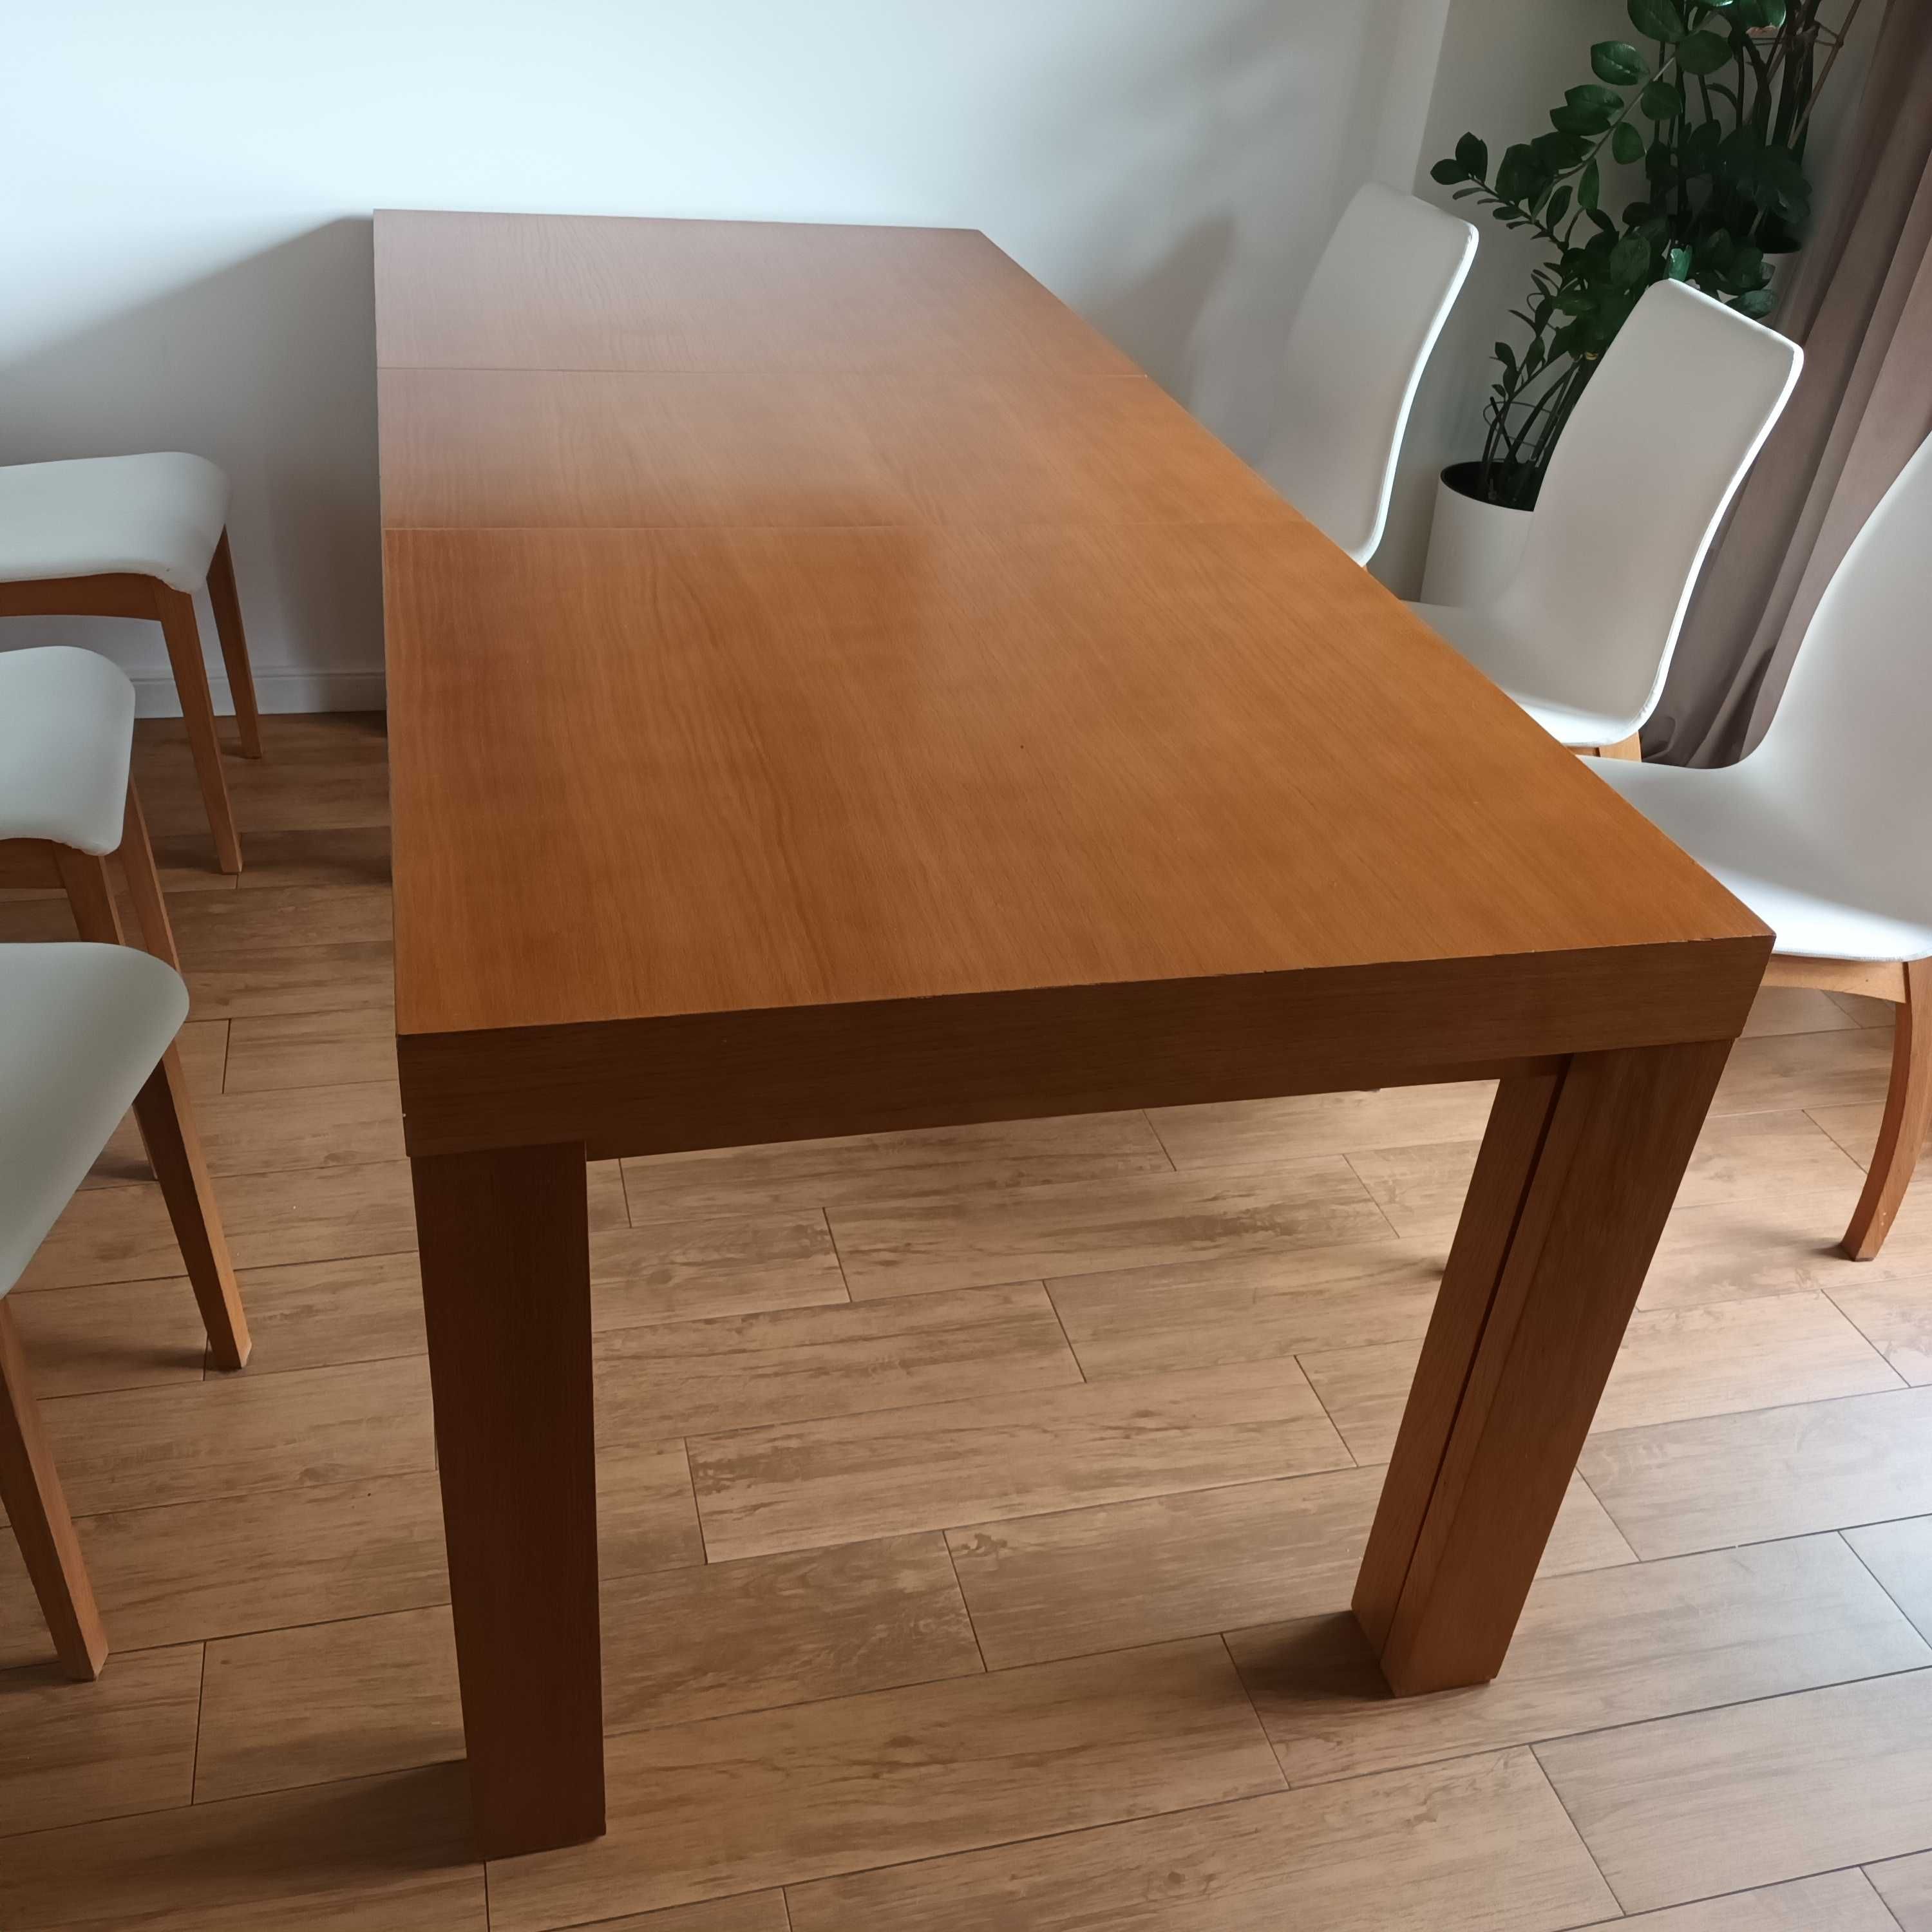 długi stół drewniany rozkładany do 360 cm, fornirowany 160x 90 cm